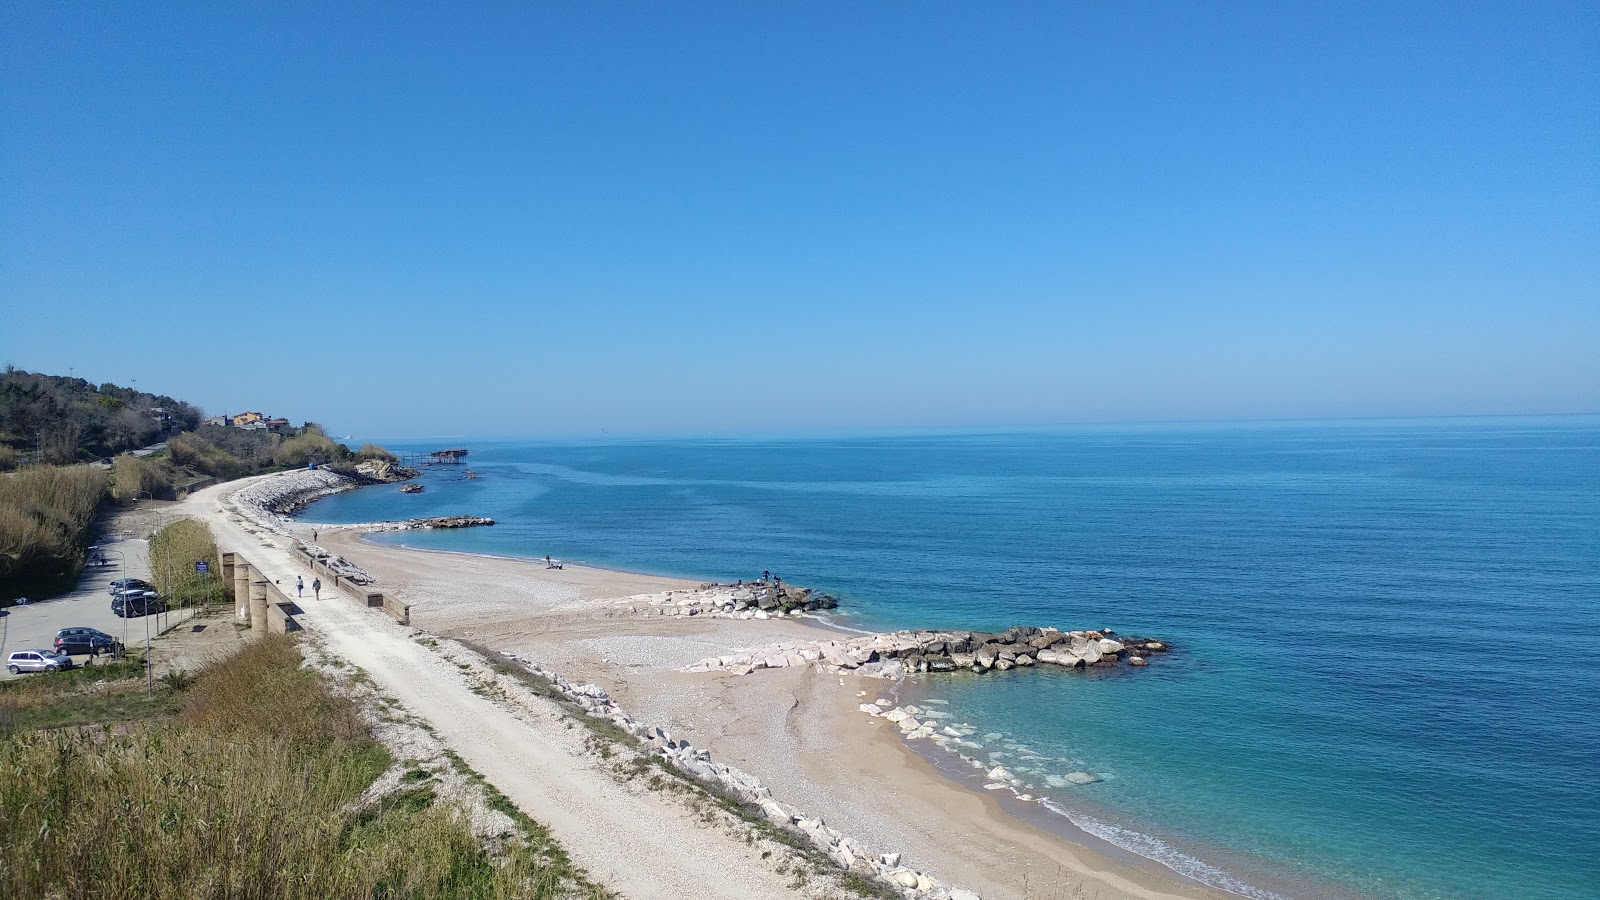 Photo of Spiaggia della Foce with spacious multi bays